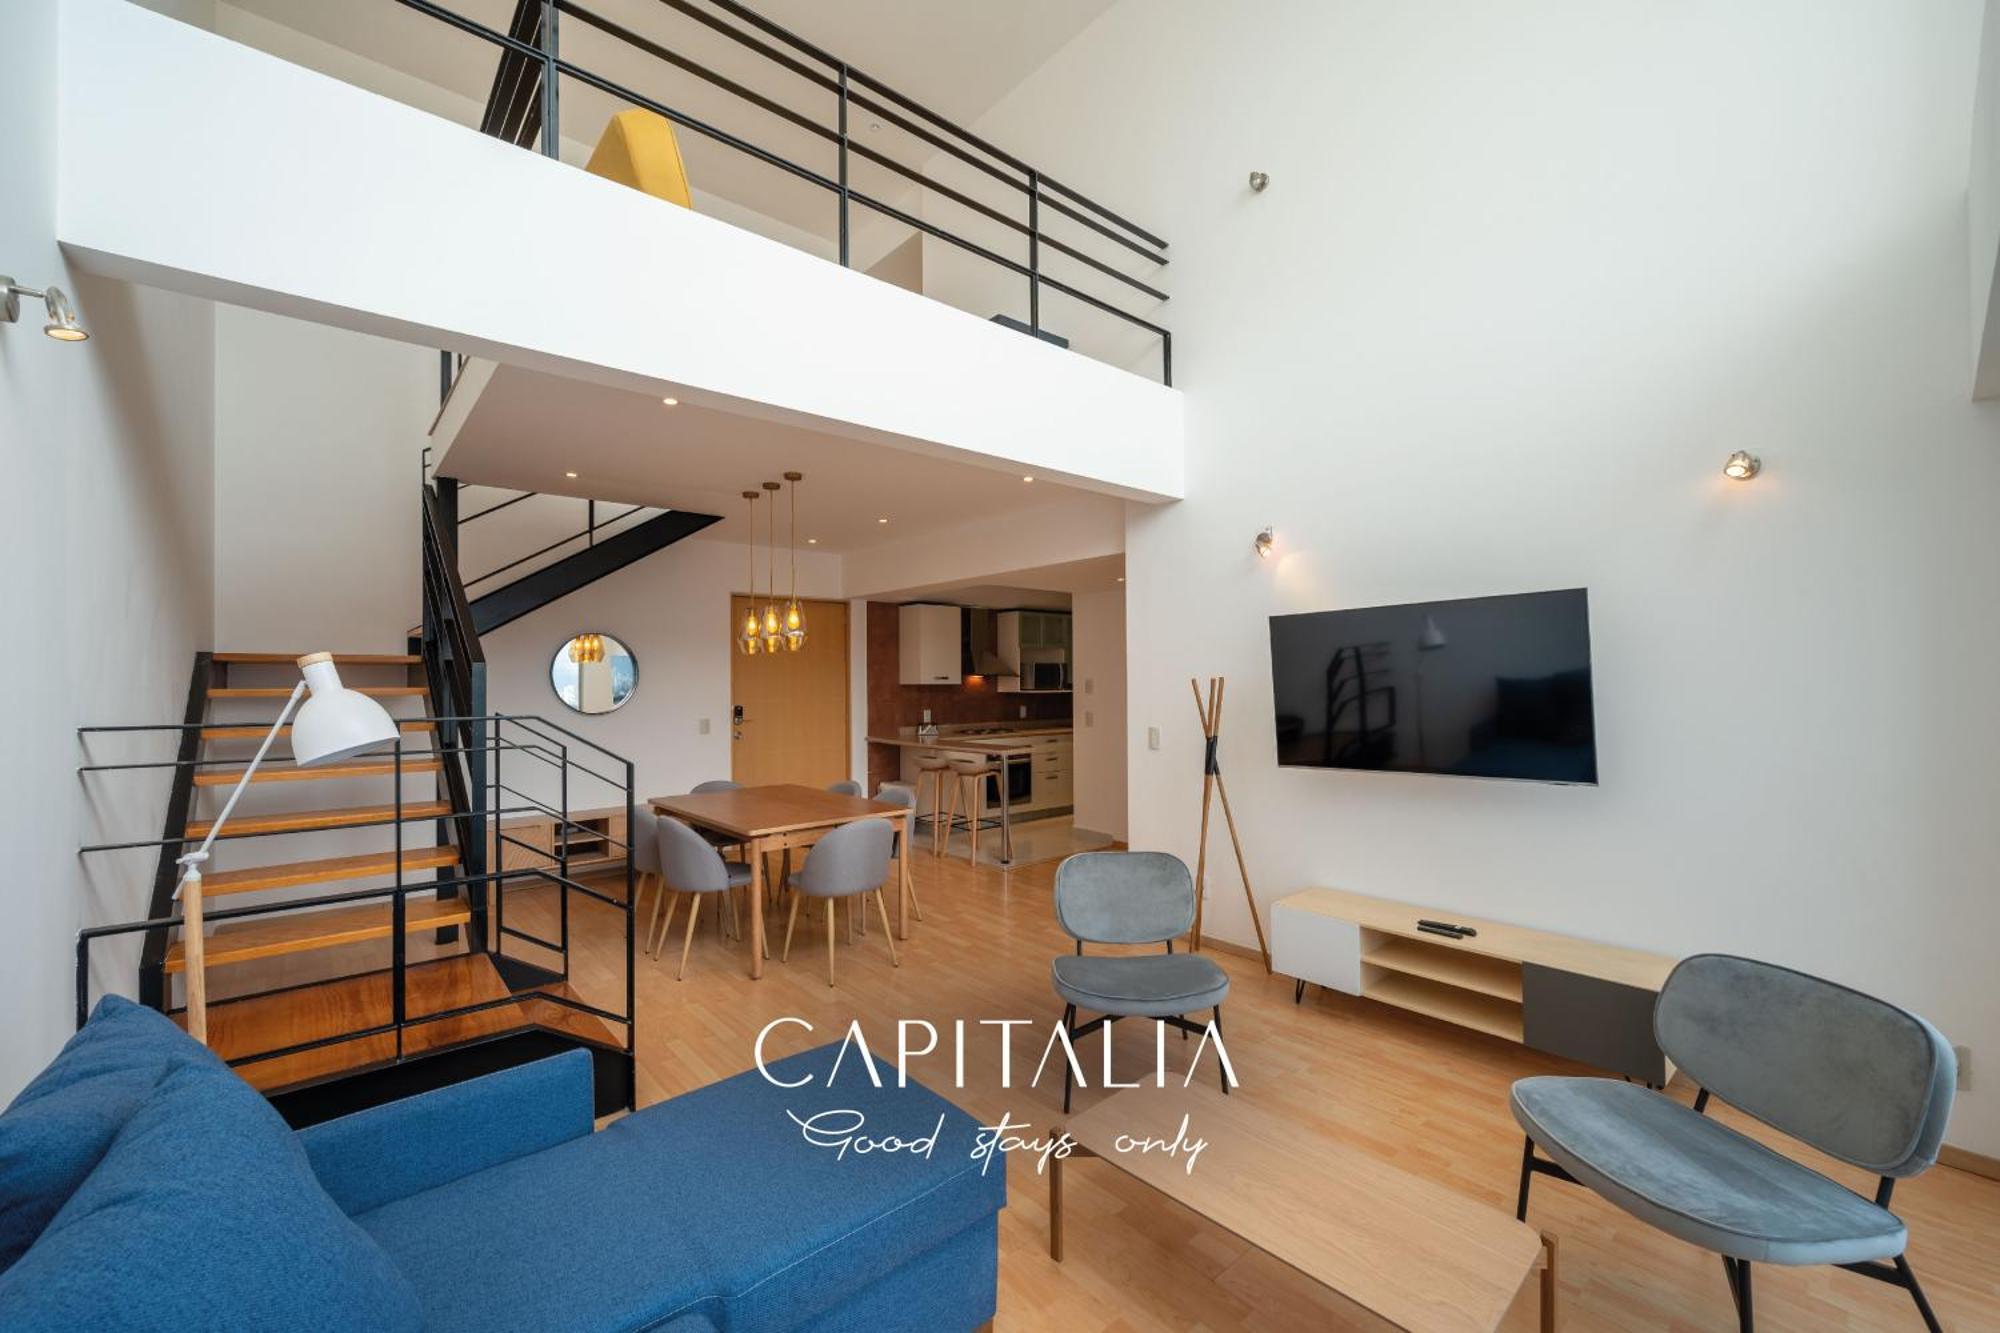 Capitalia - Apartments - Santa Fe Mexico by Rom bilde